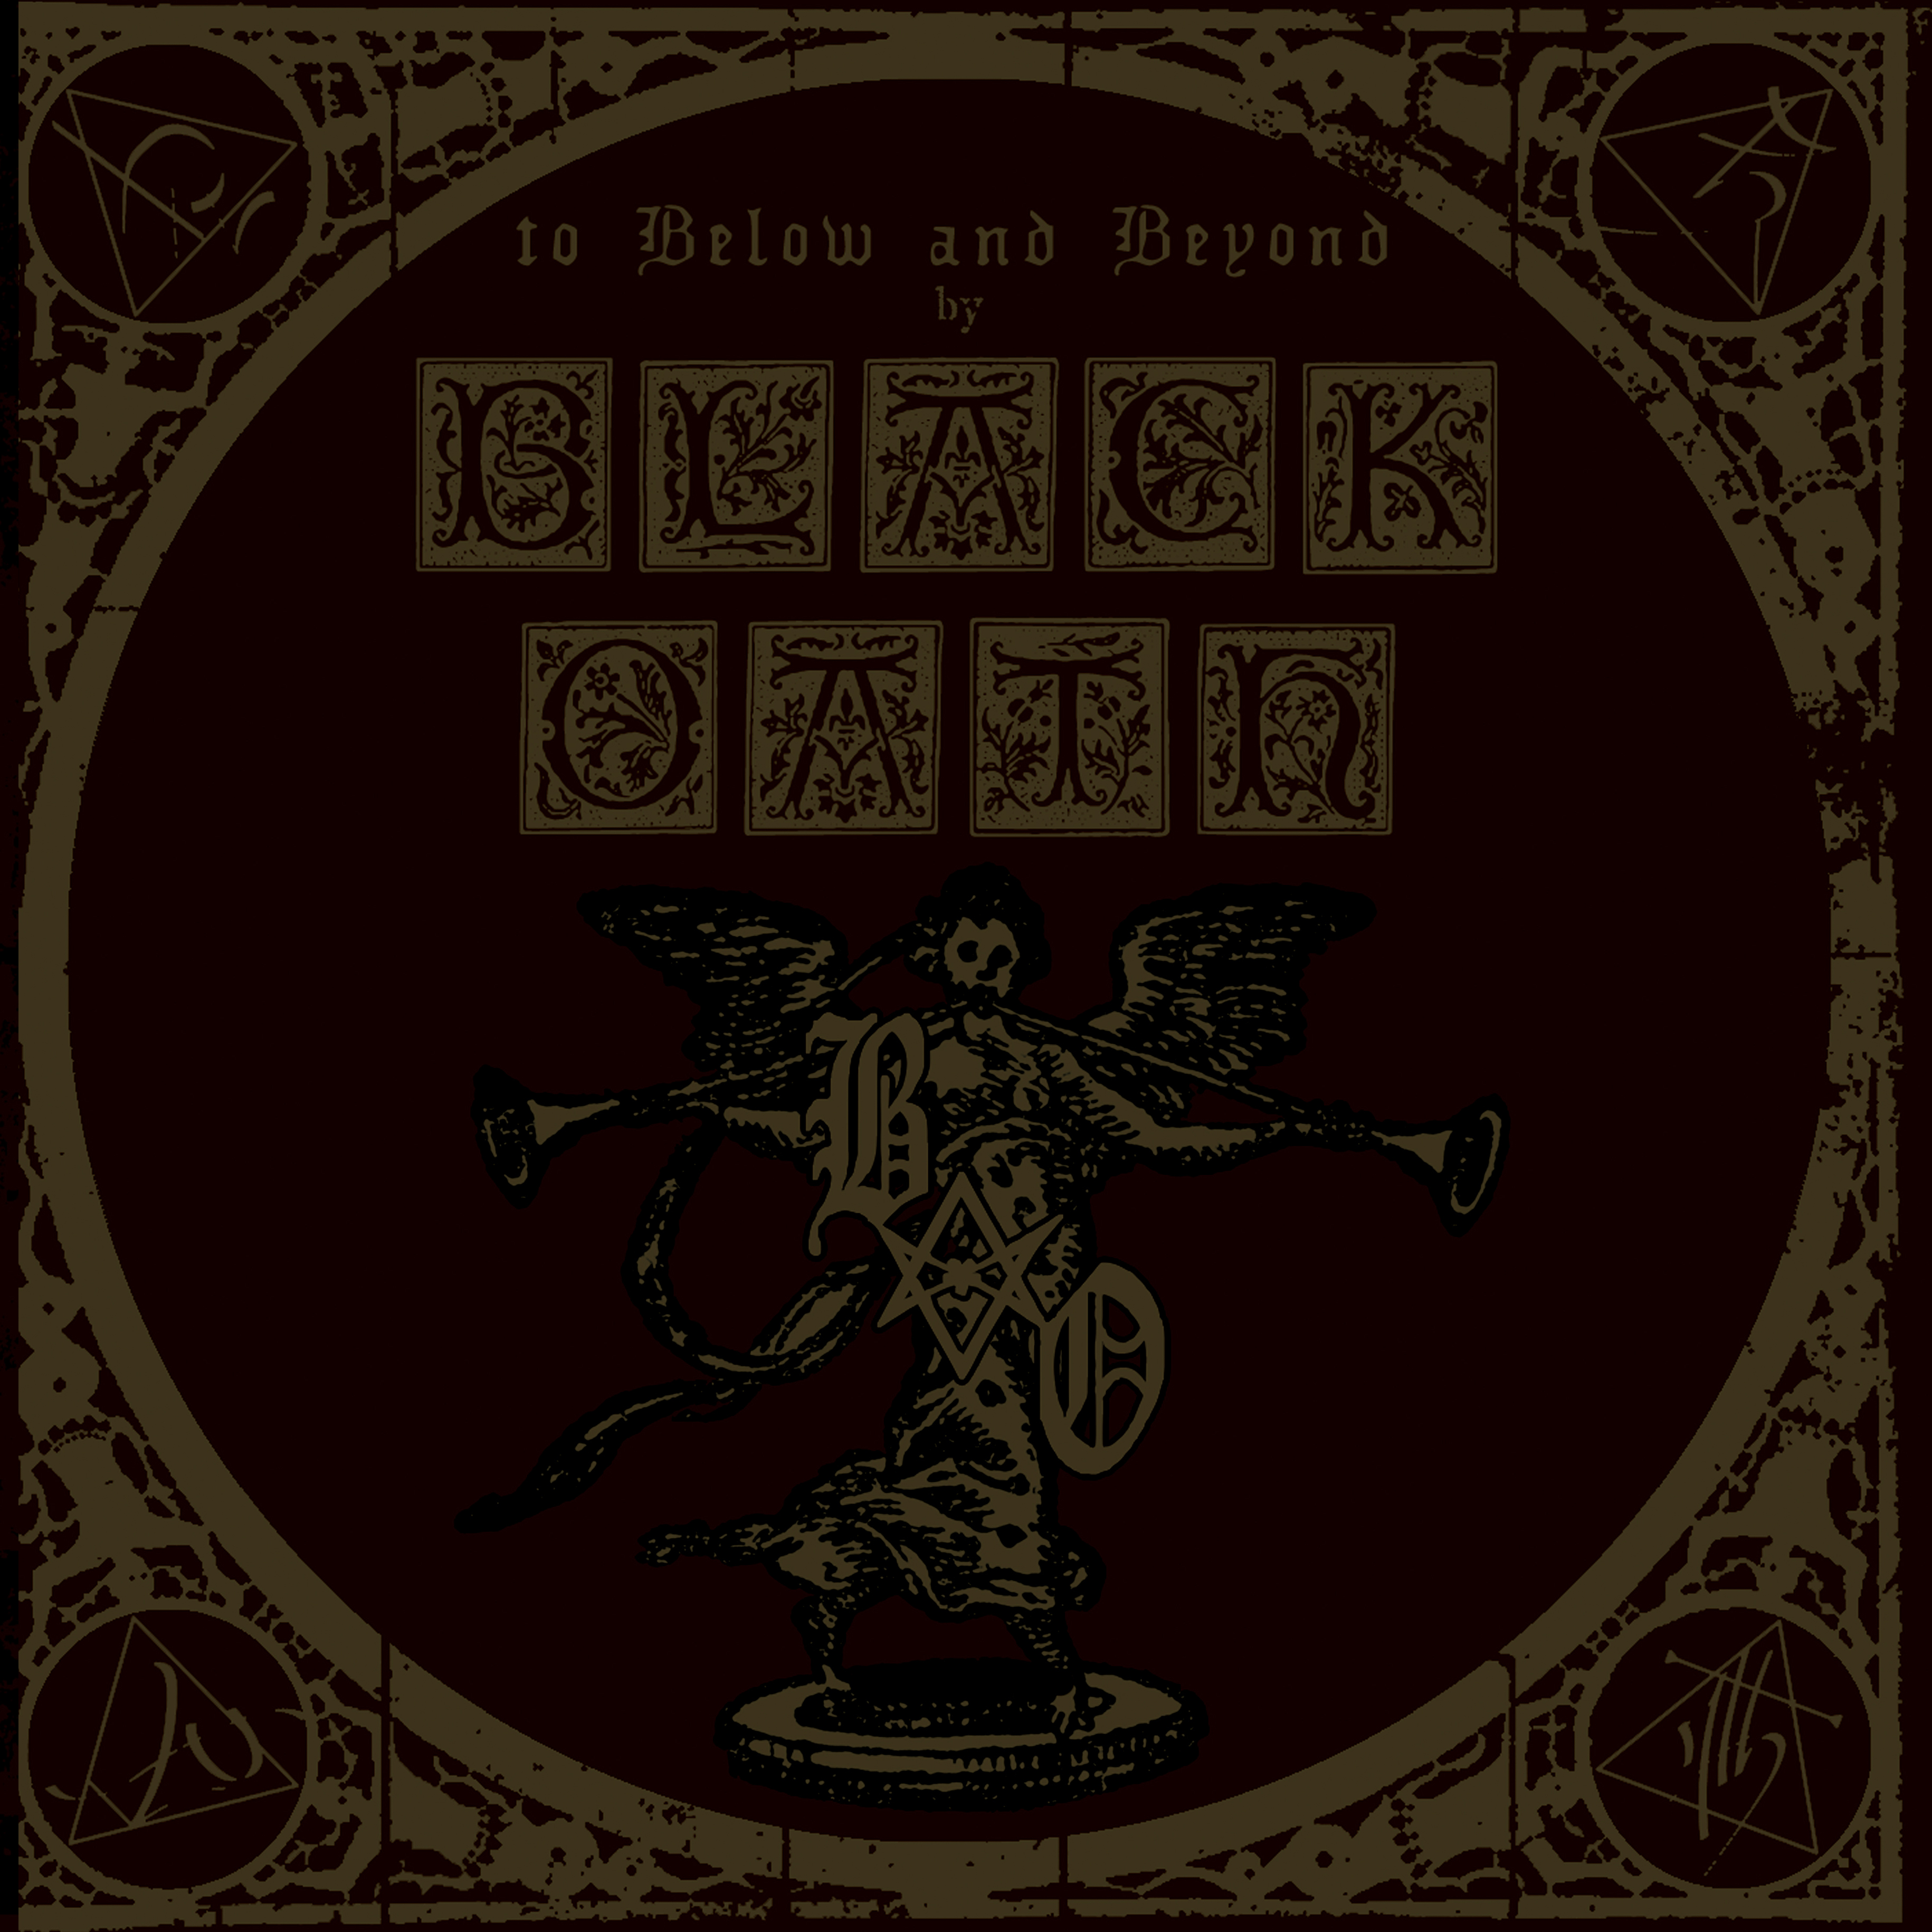 Black oath